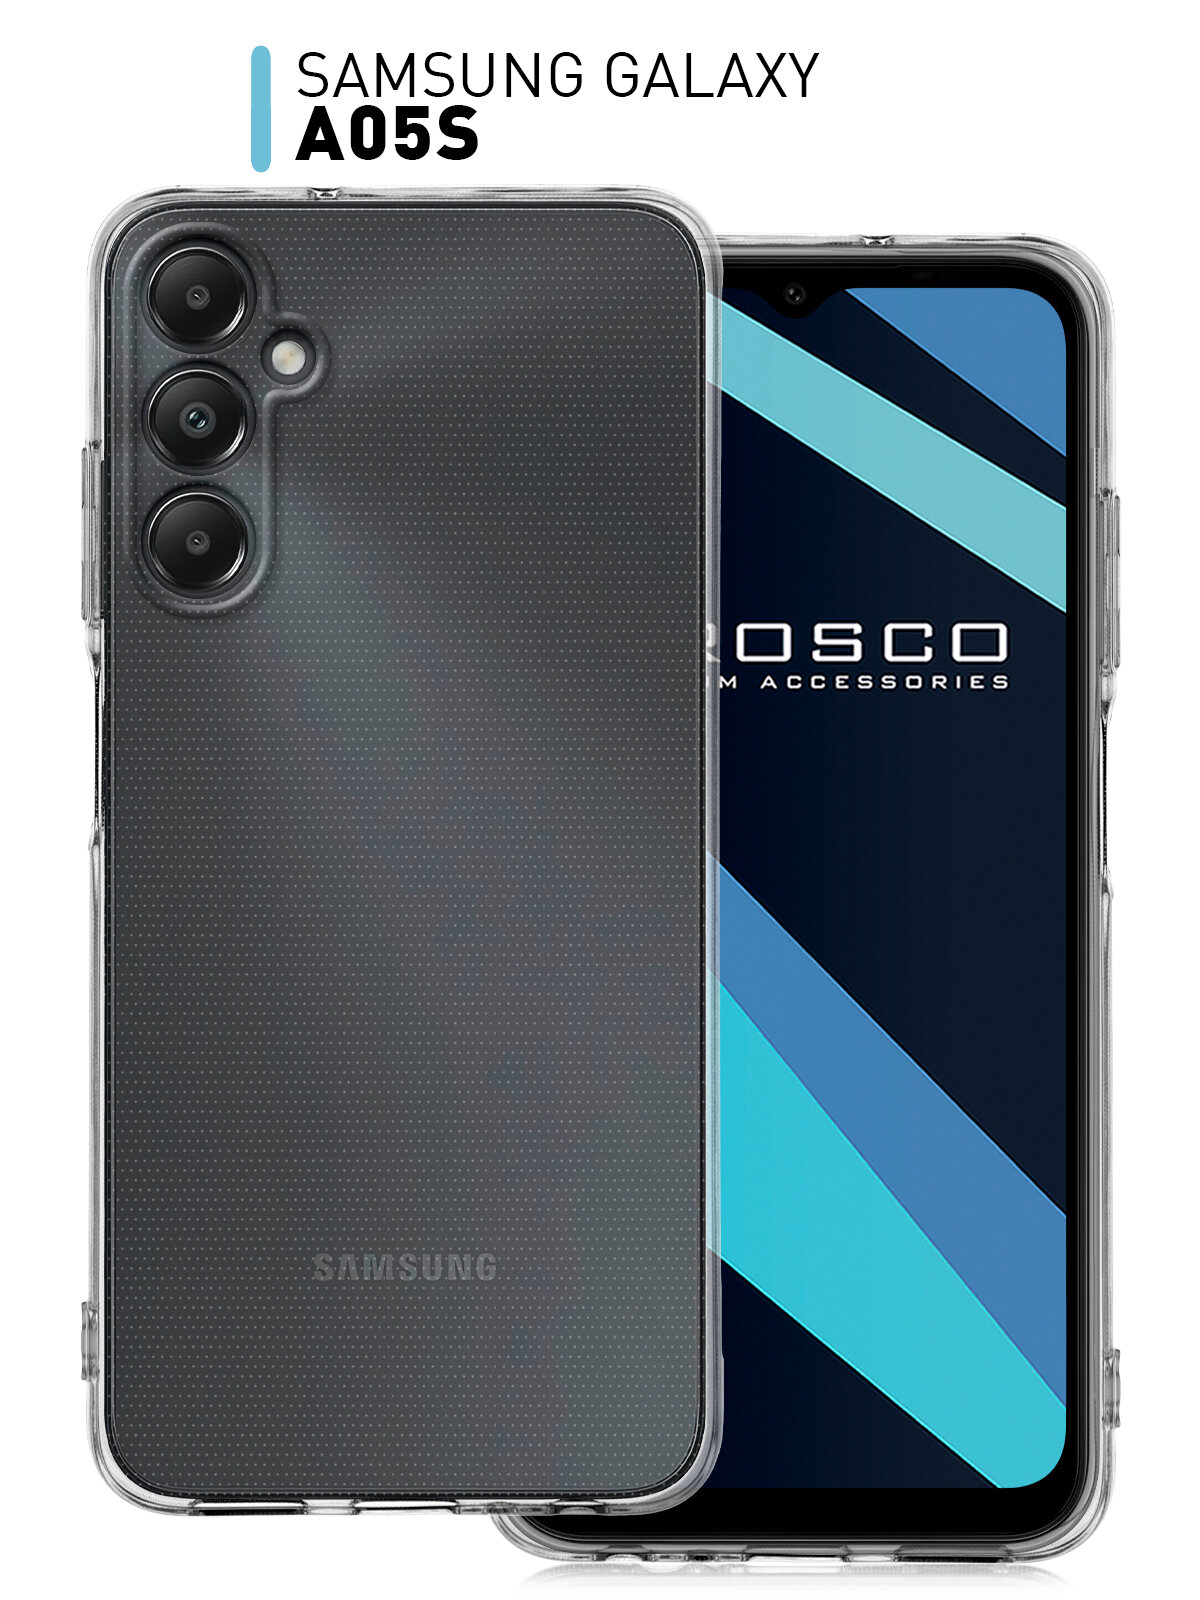 Чехол ROSCO для Samsung Galaxy A05s (Самсунг Галакси А05с) с защитой блока камеры, силиконовый чехол, гибкий, прозрачный чехол